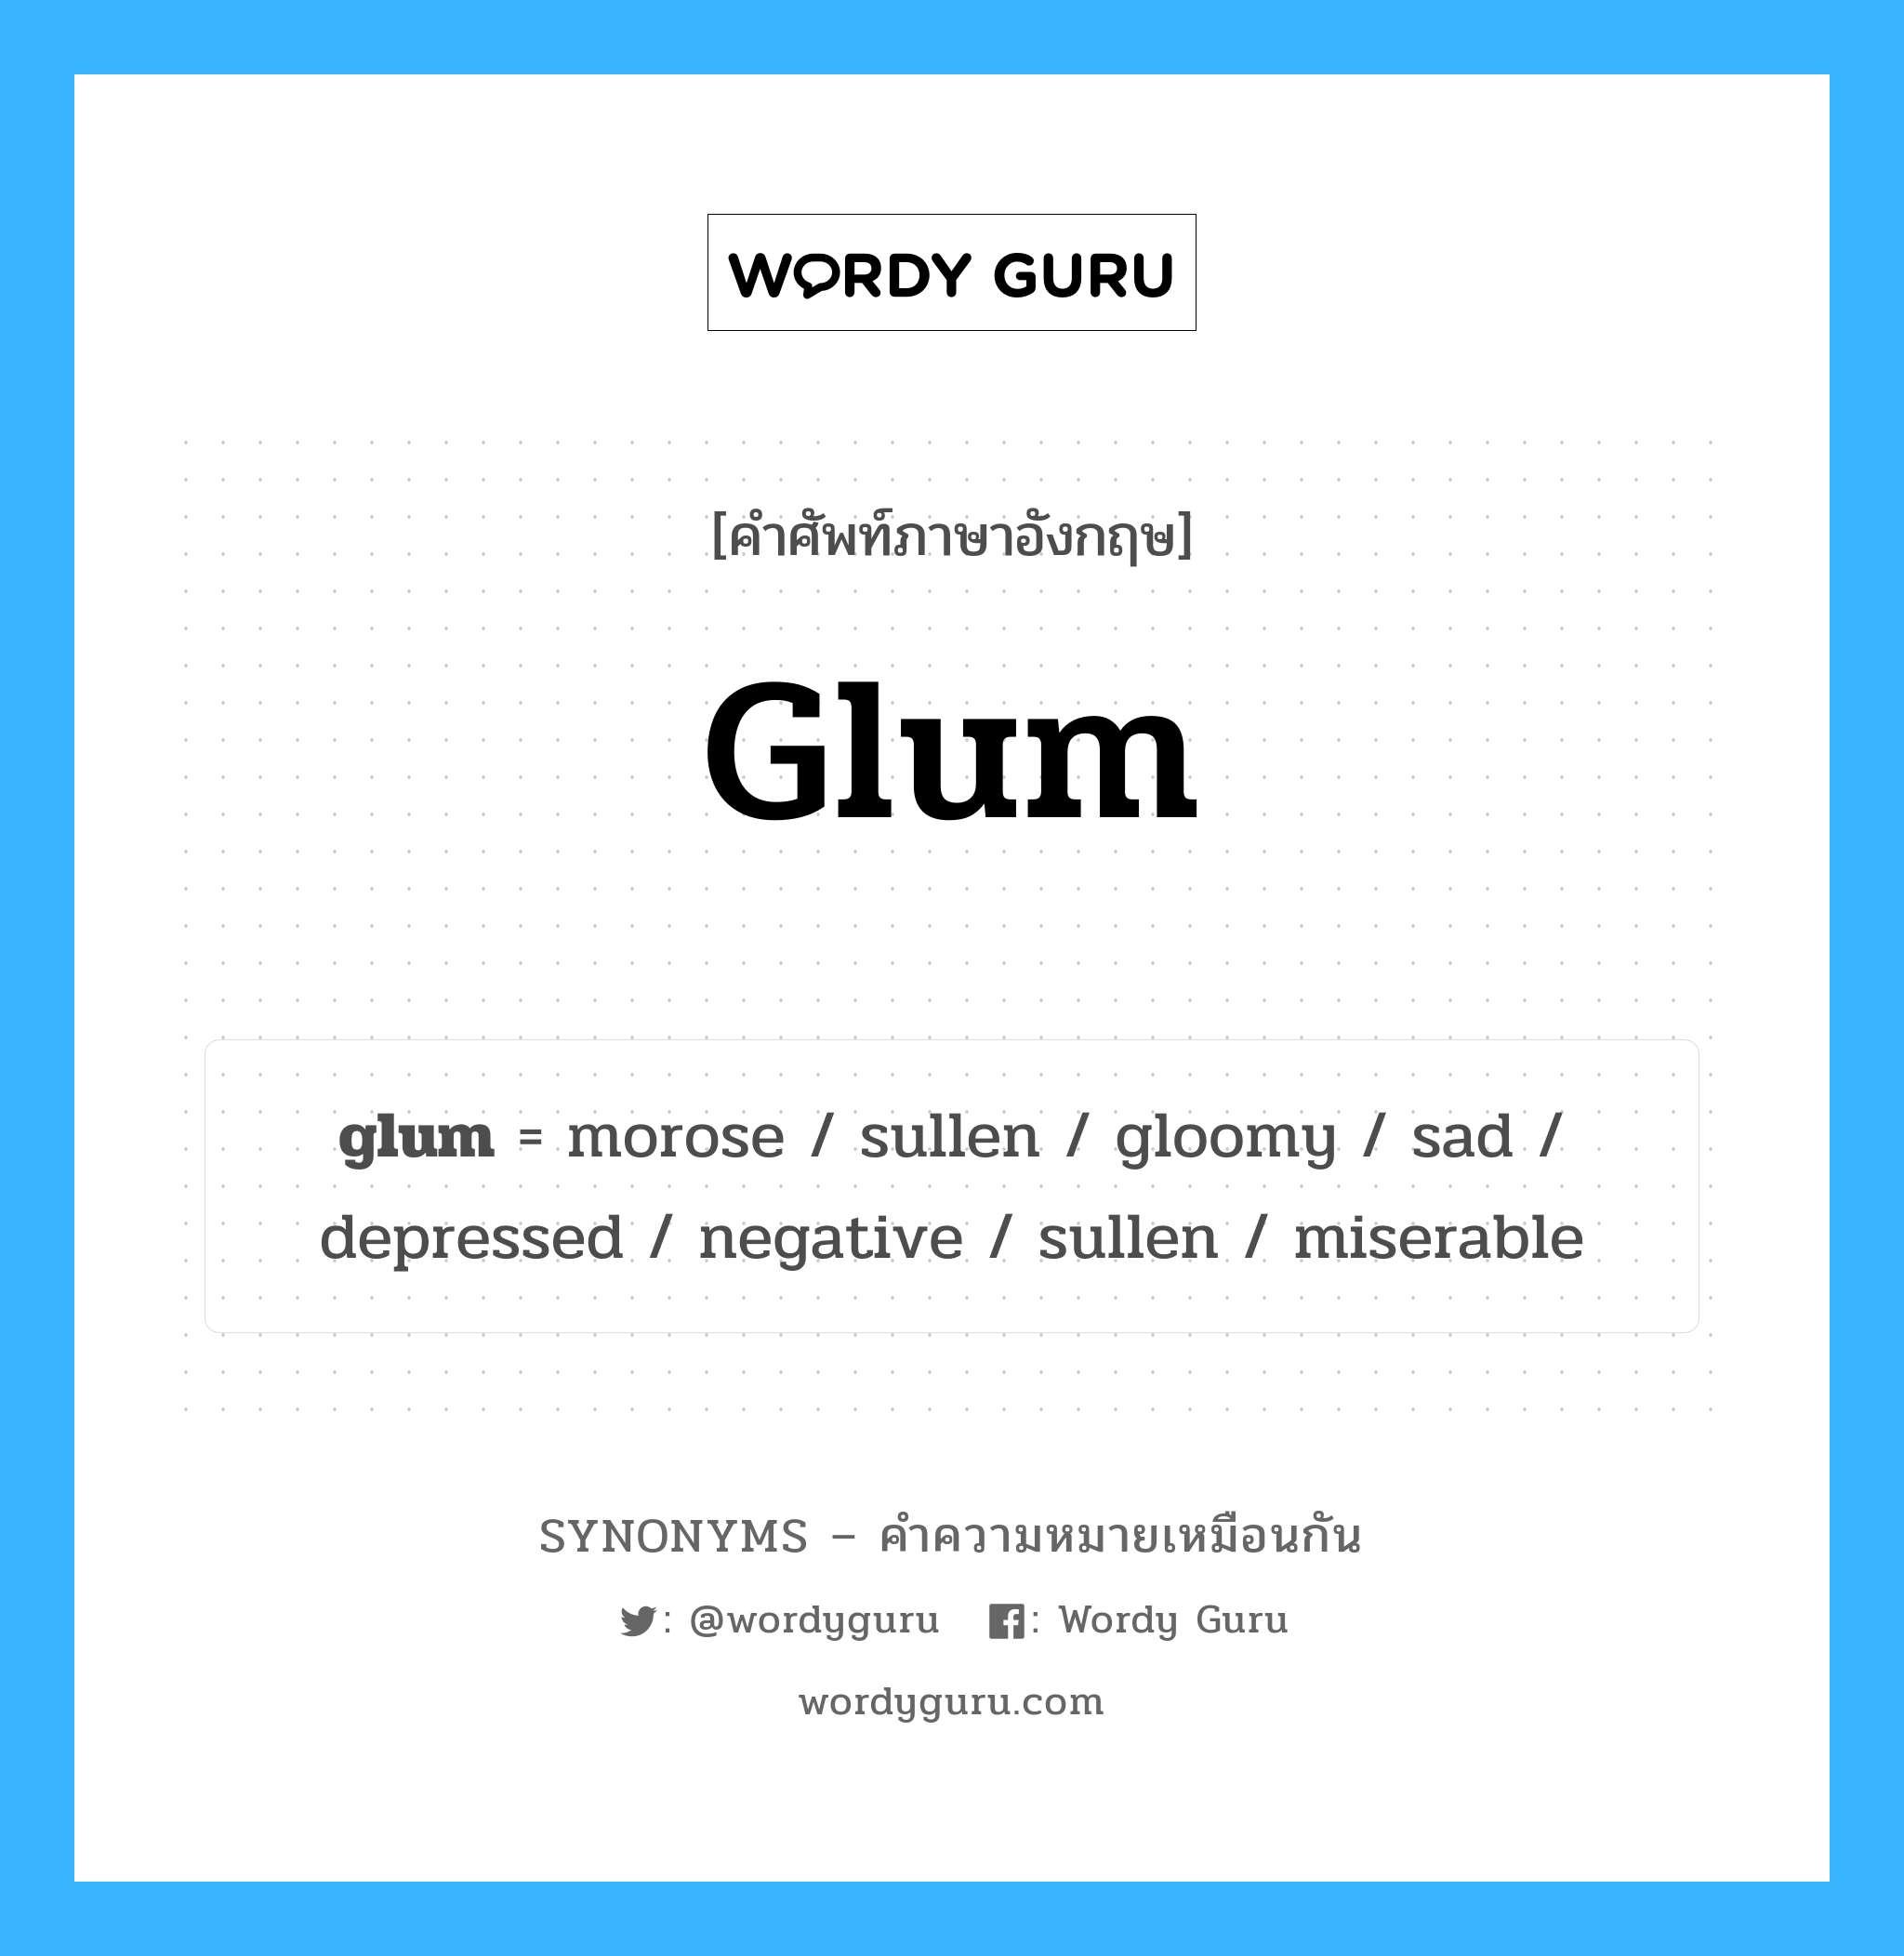 miserable เป็นหนึ่งใน glum และมีคำอื่น ๆ อีกดังนี้, คำศัพท์ภาษาอังกฤษ miserable ความหมายคล้ายกันกับ glum แปลว่า อนาถ หมวด glum